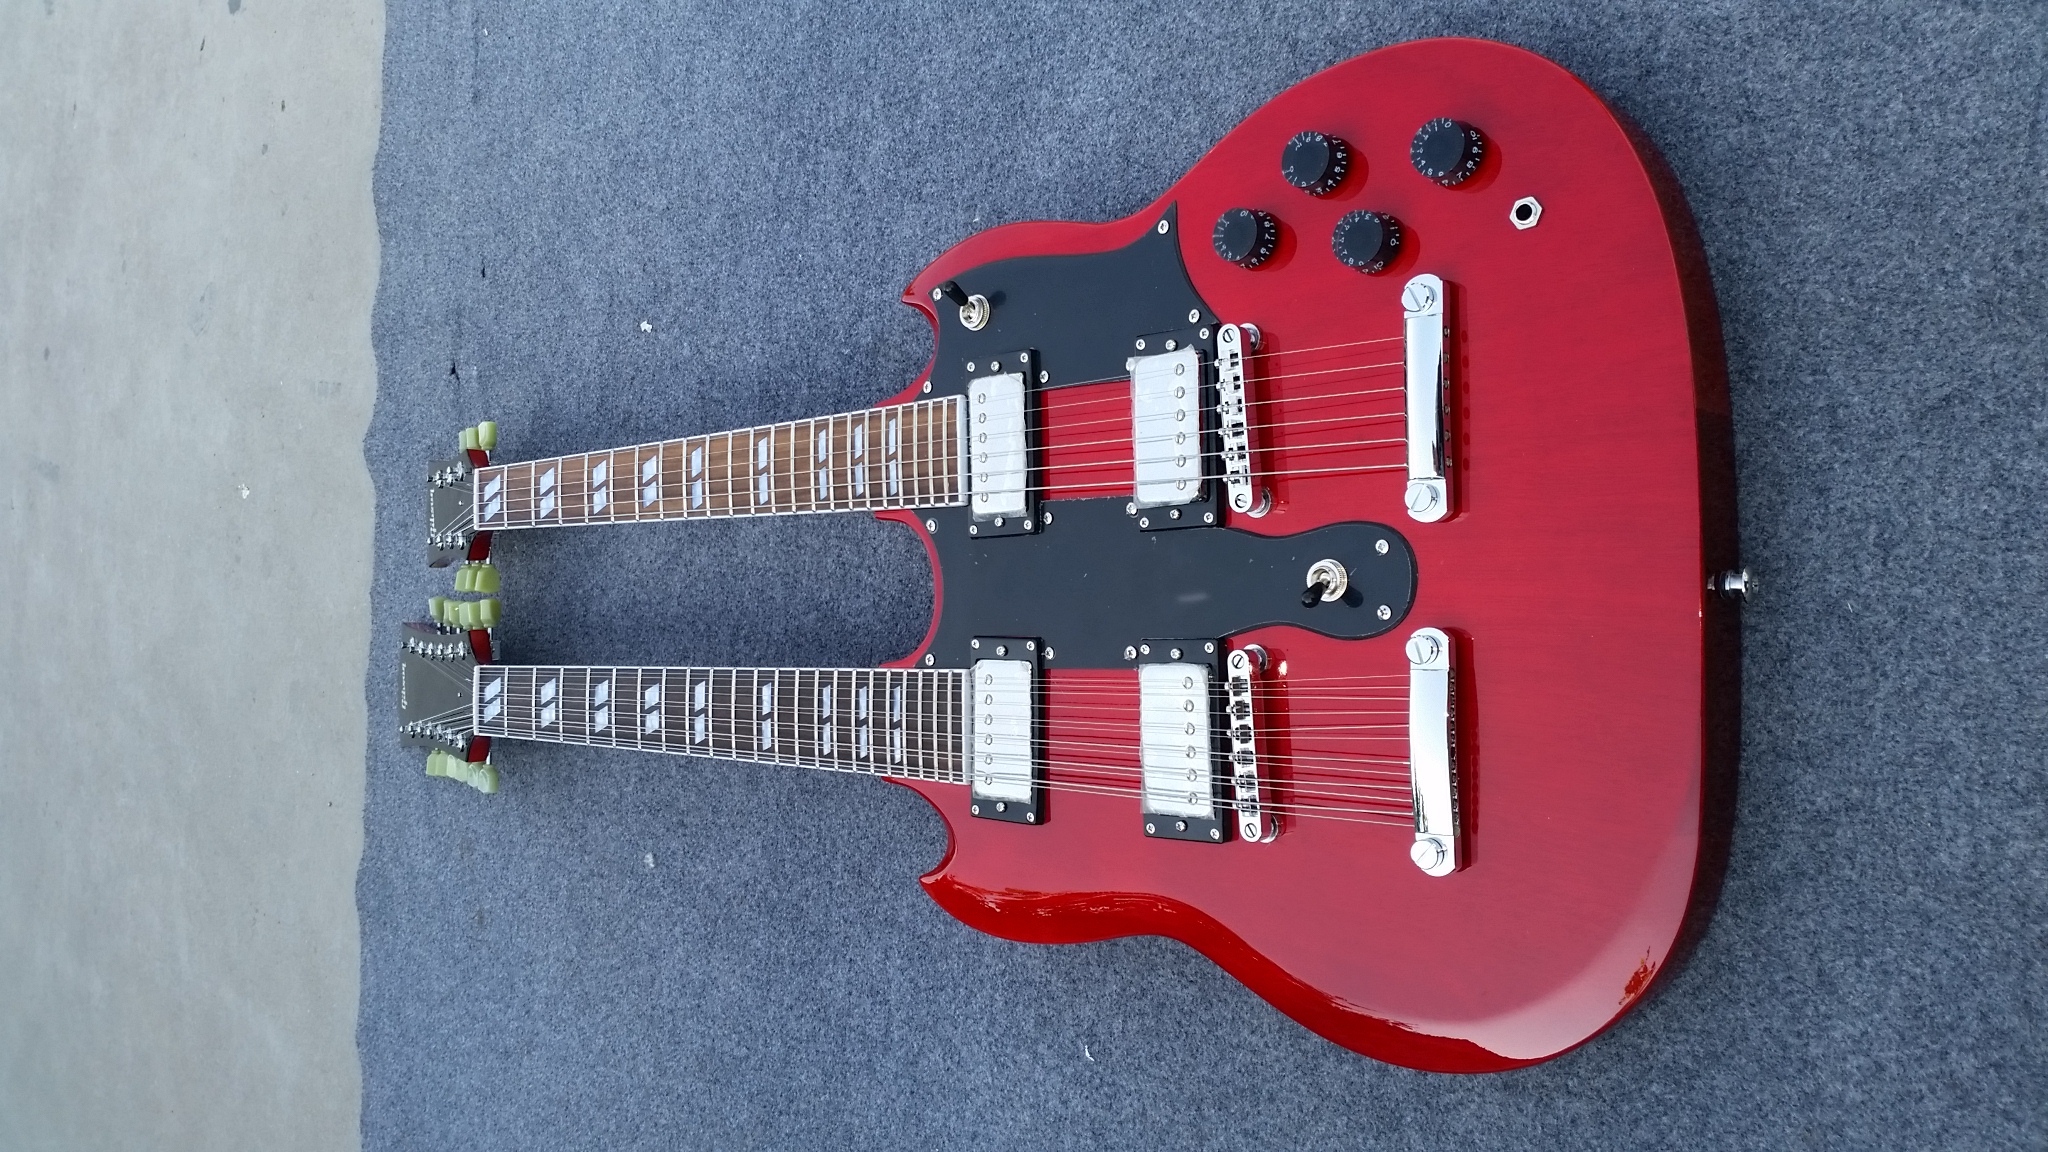 Rode dubbele hals SG elektrische gitaar van hoge kwaliteit, nikkel-chroom hardwareaccessoires, 12 snaren en 6 snaren, op voorraad, snelle verzending